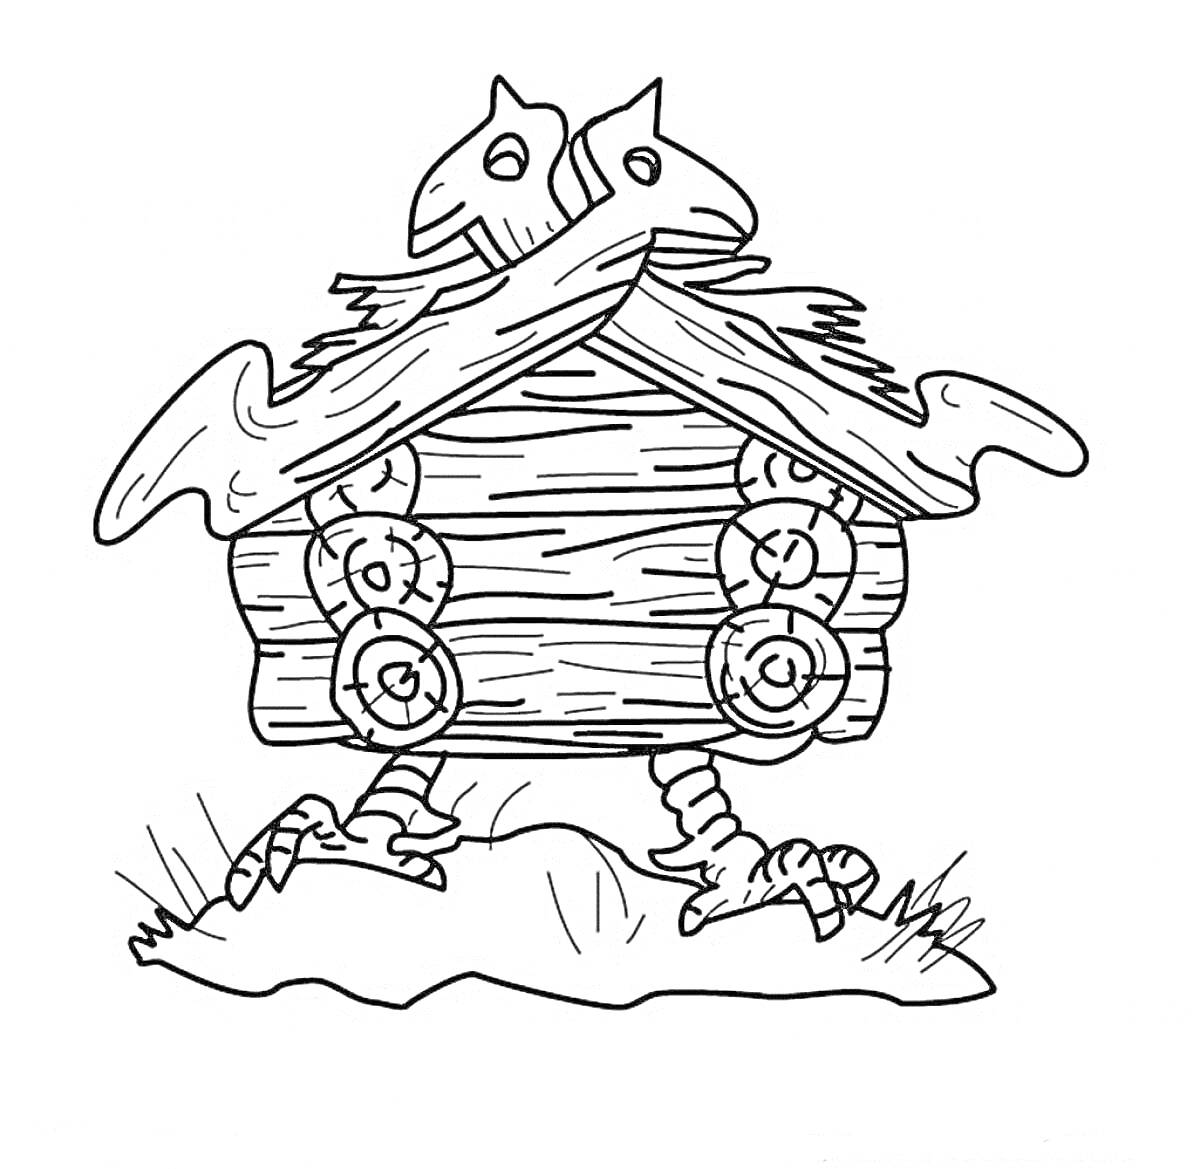 Раскраска Избушка на курьих ножках с крышей в виде двух лошадиных голов, стоящая на пеньке с травой вокруг